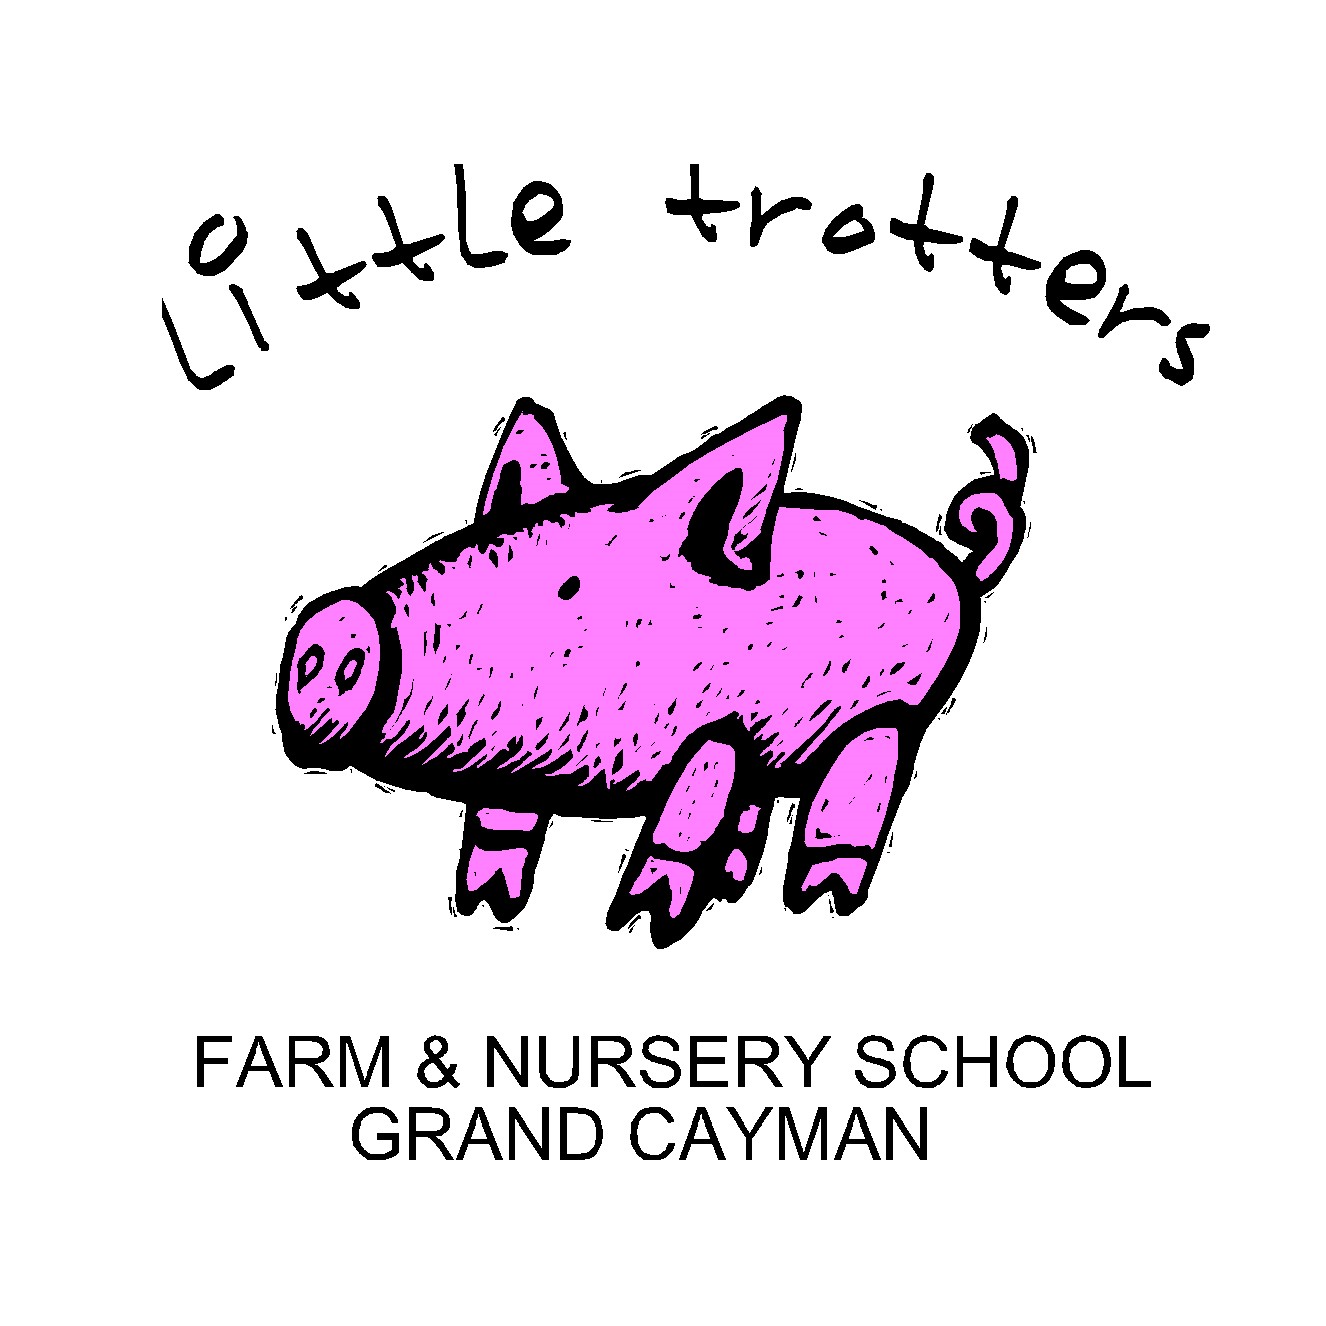 Little Trotters Farm & Nursery School